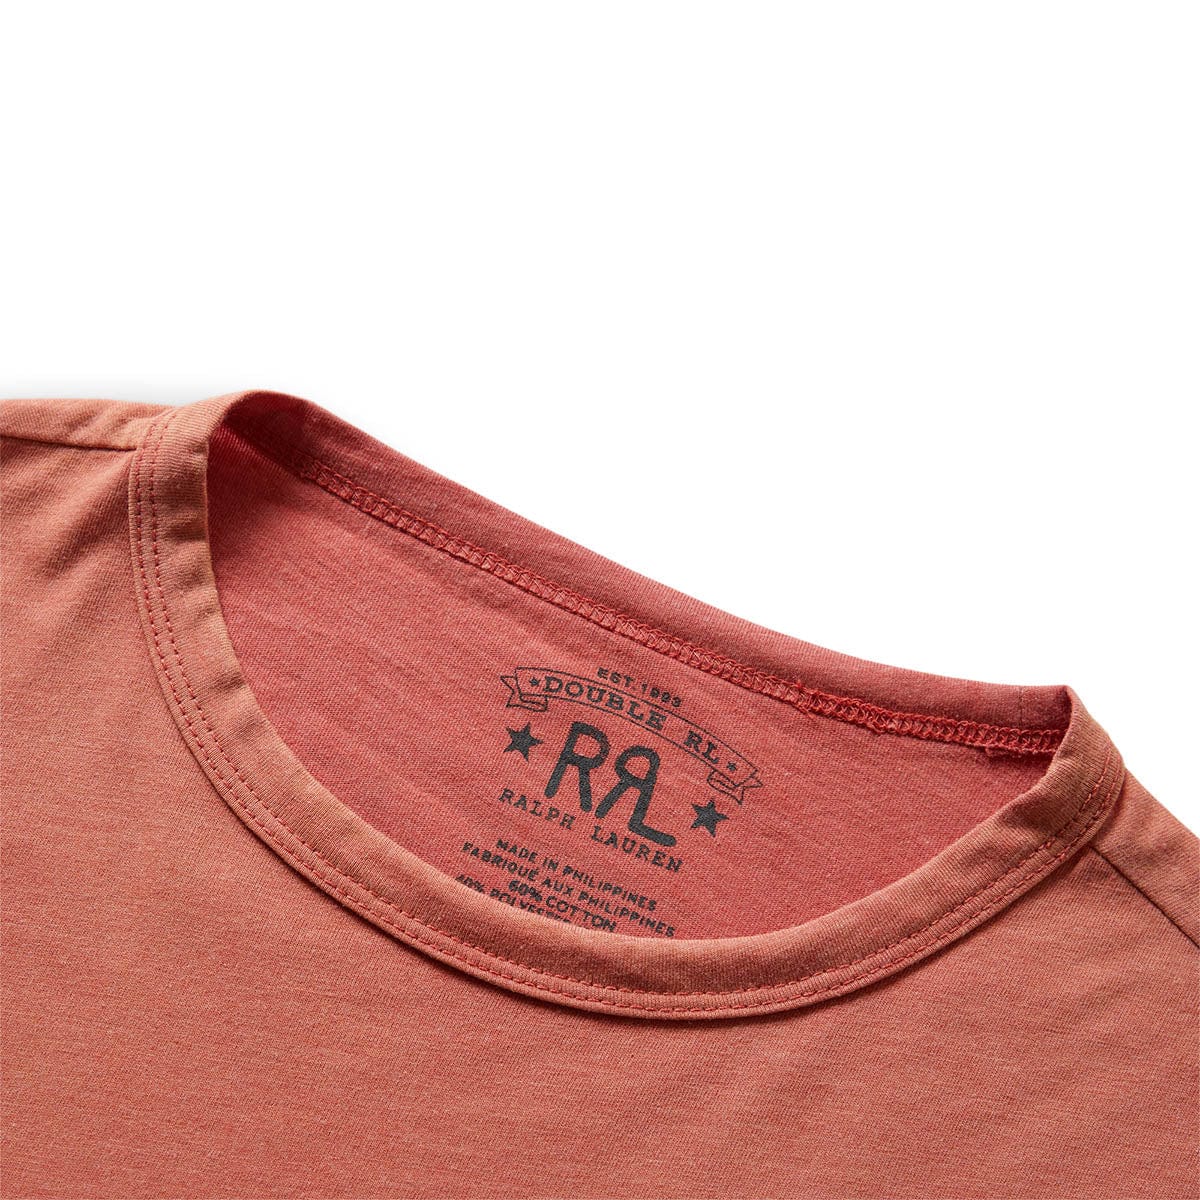 RRL T-Shirts S/S COTTON BLEND GRAPHIC T-SHIRT